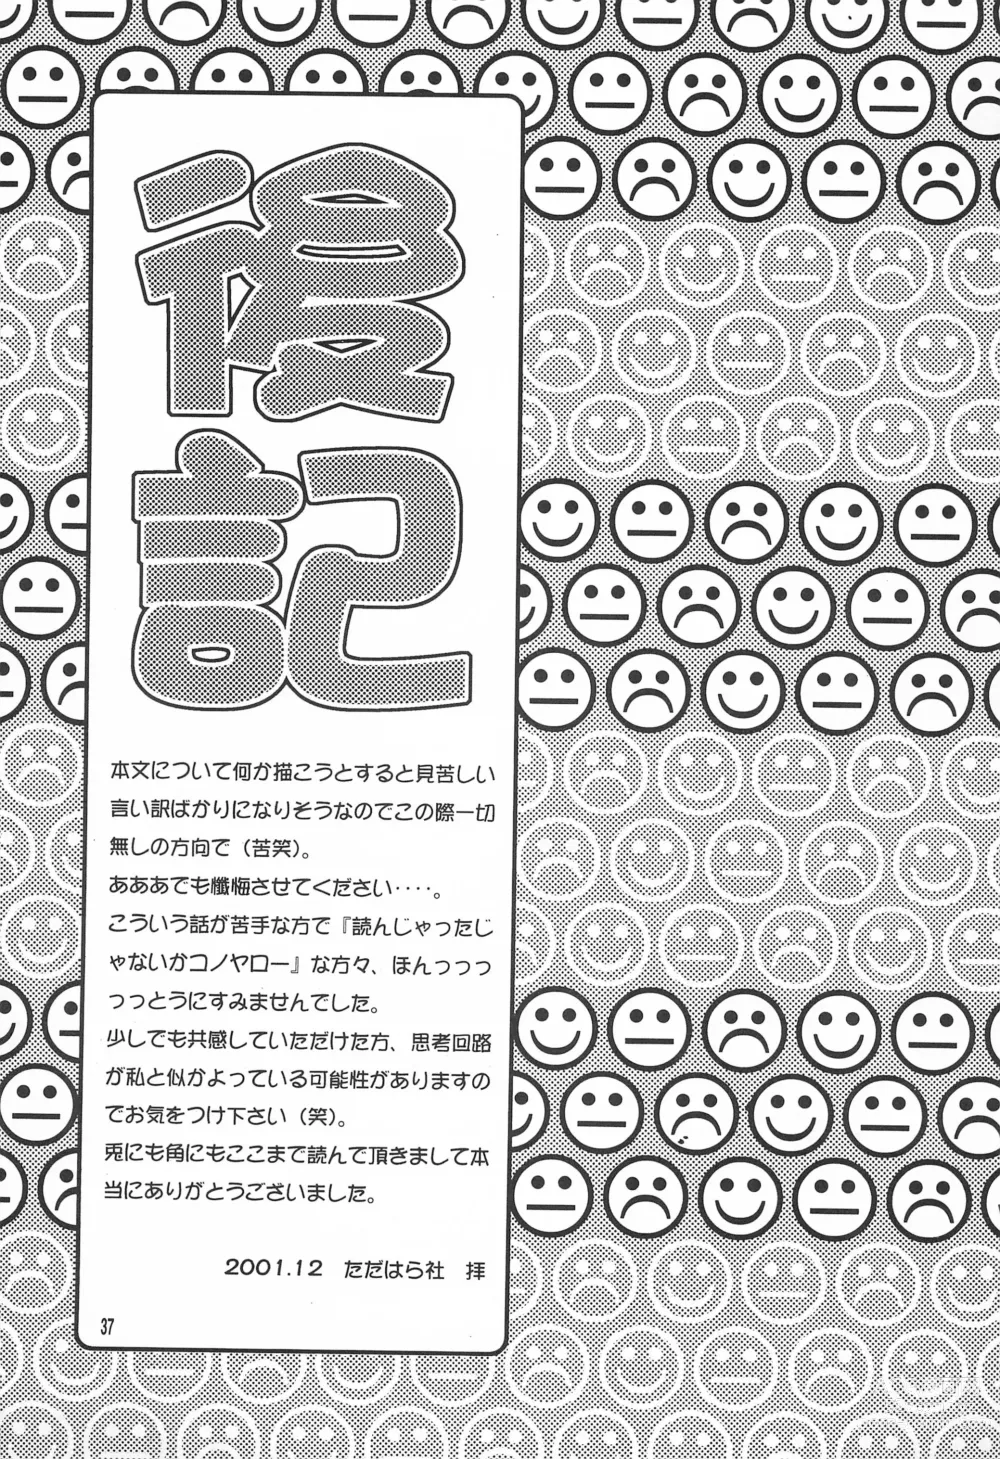 Page 39 of doujinshi Utsukushiki Samazama no Yume